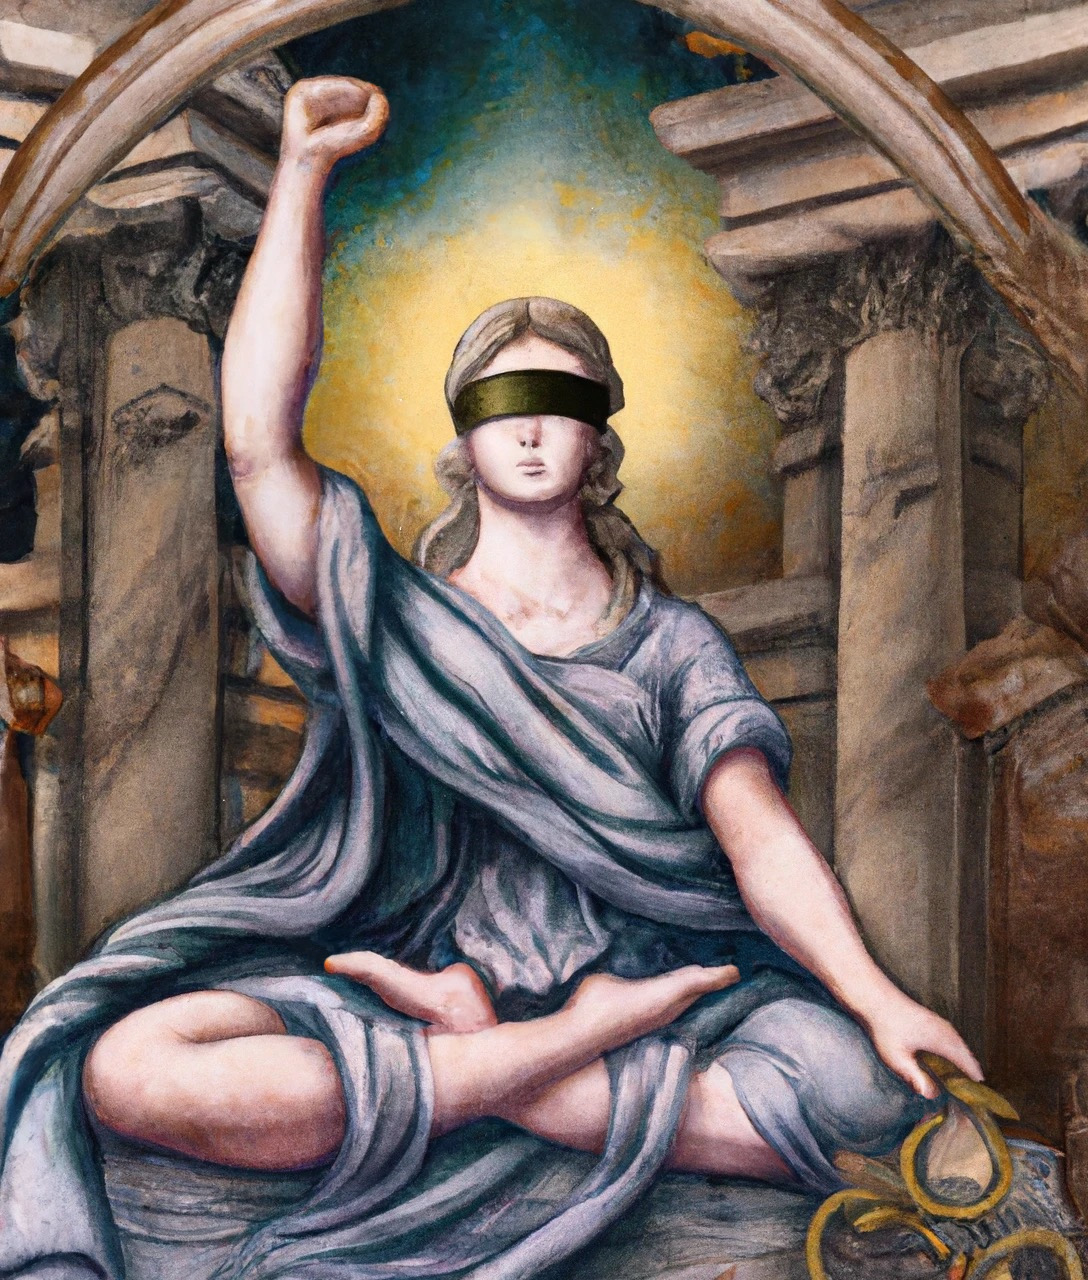 DALL·E: "Lady justice bodhisattva, fist raised in the air, ✊, by Giovanni Battista Piranesi"